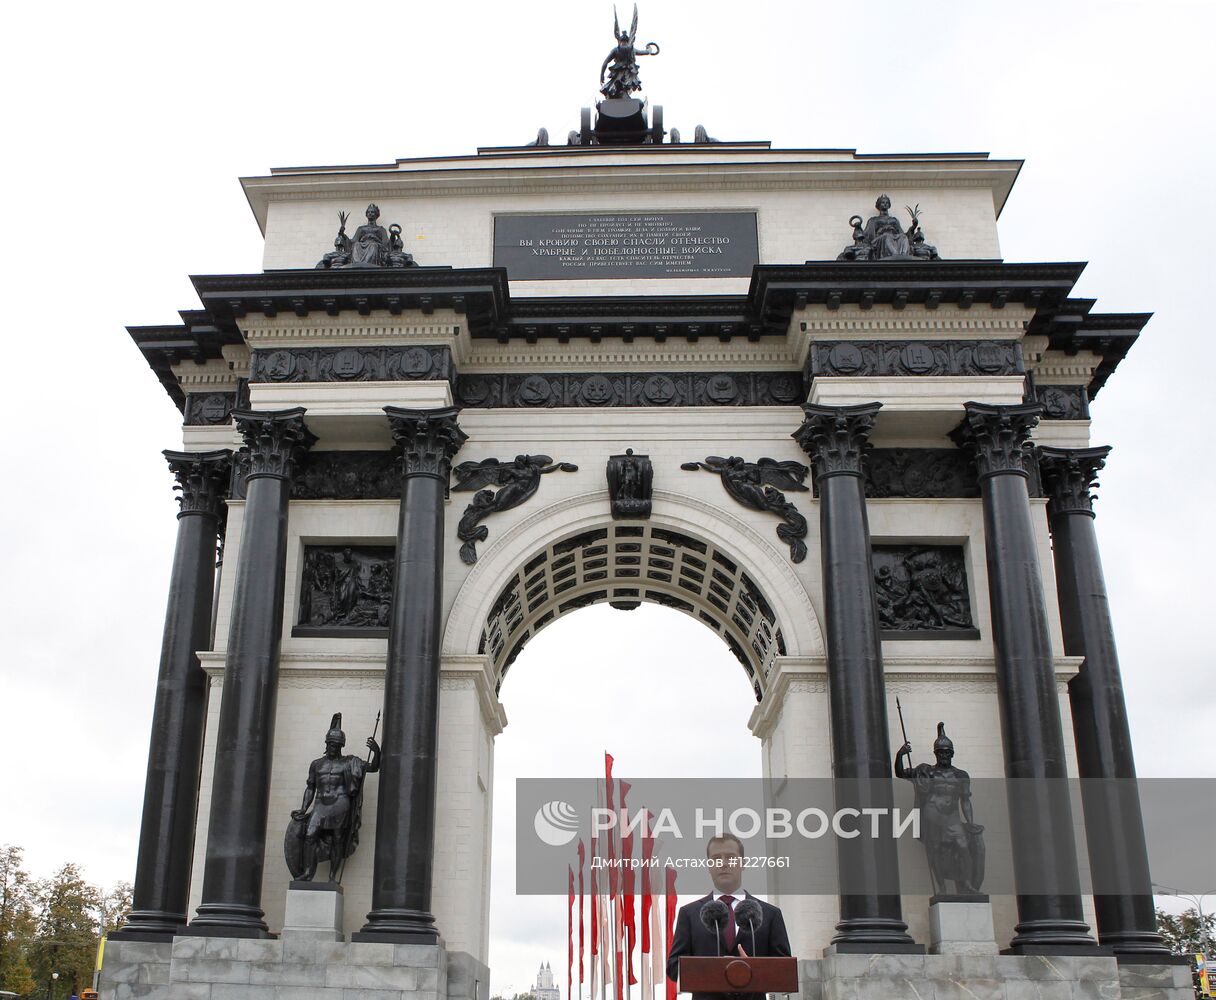 Д.Медведев на открытии Триумфальных ворот после реставрации